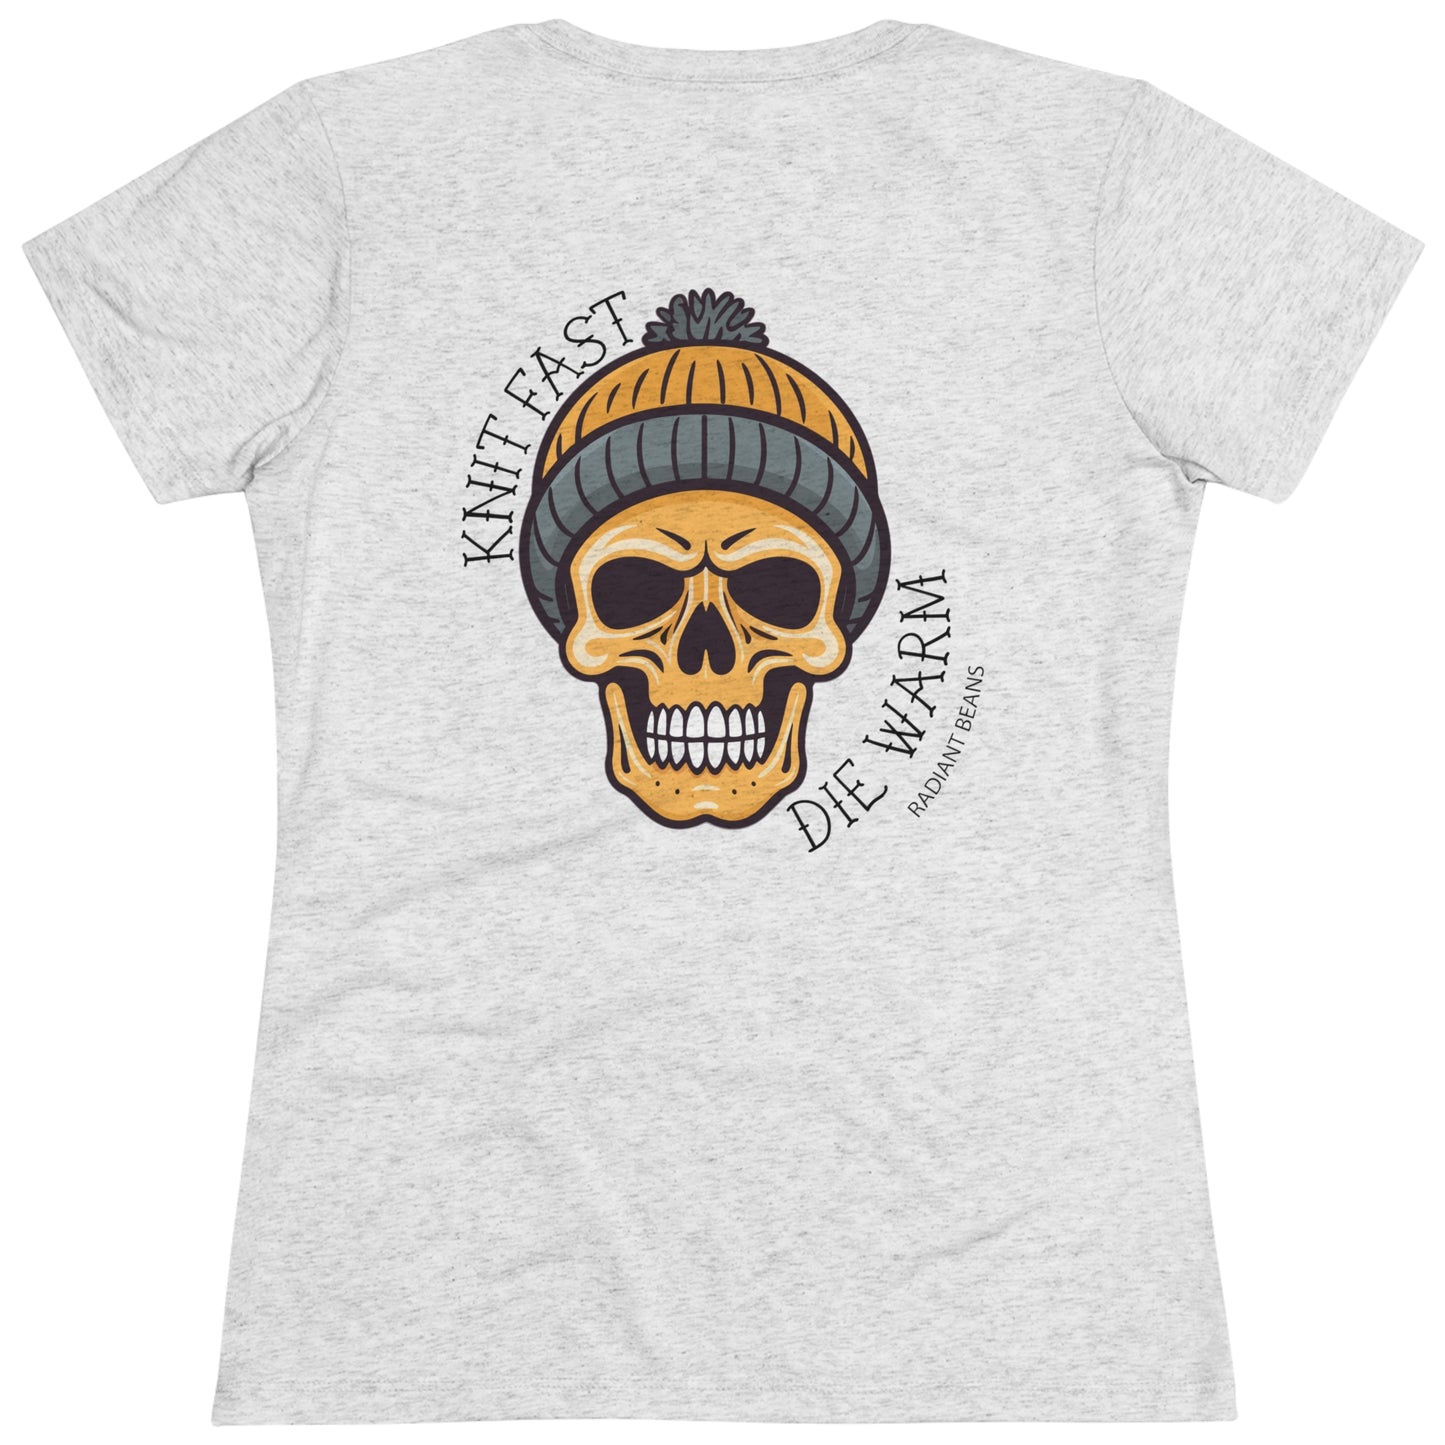 Knit Fast, Die Warm - Gold - Women's T-Shirt